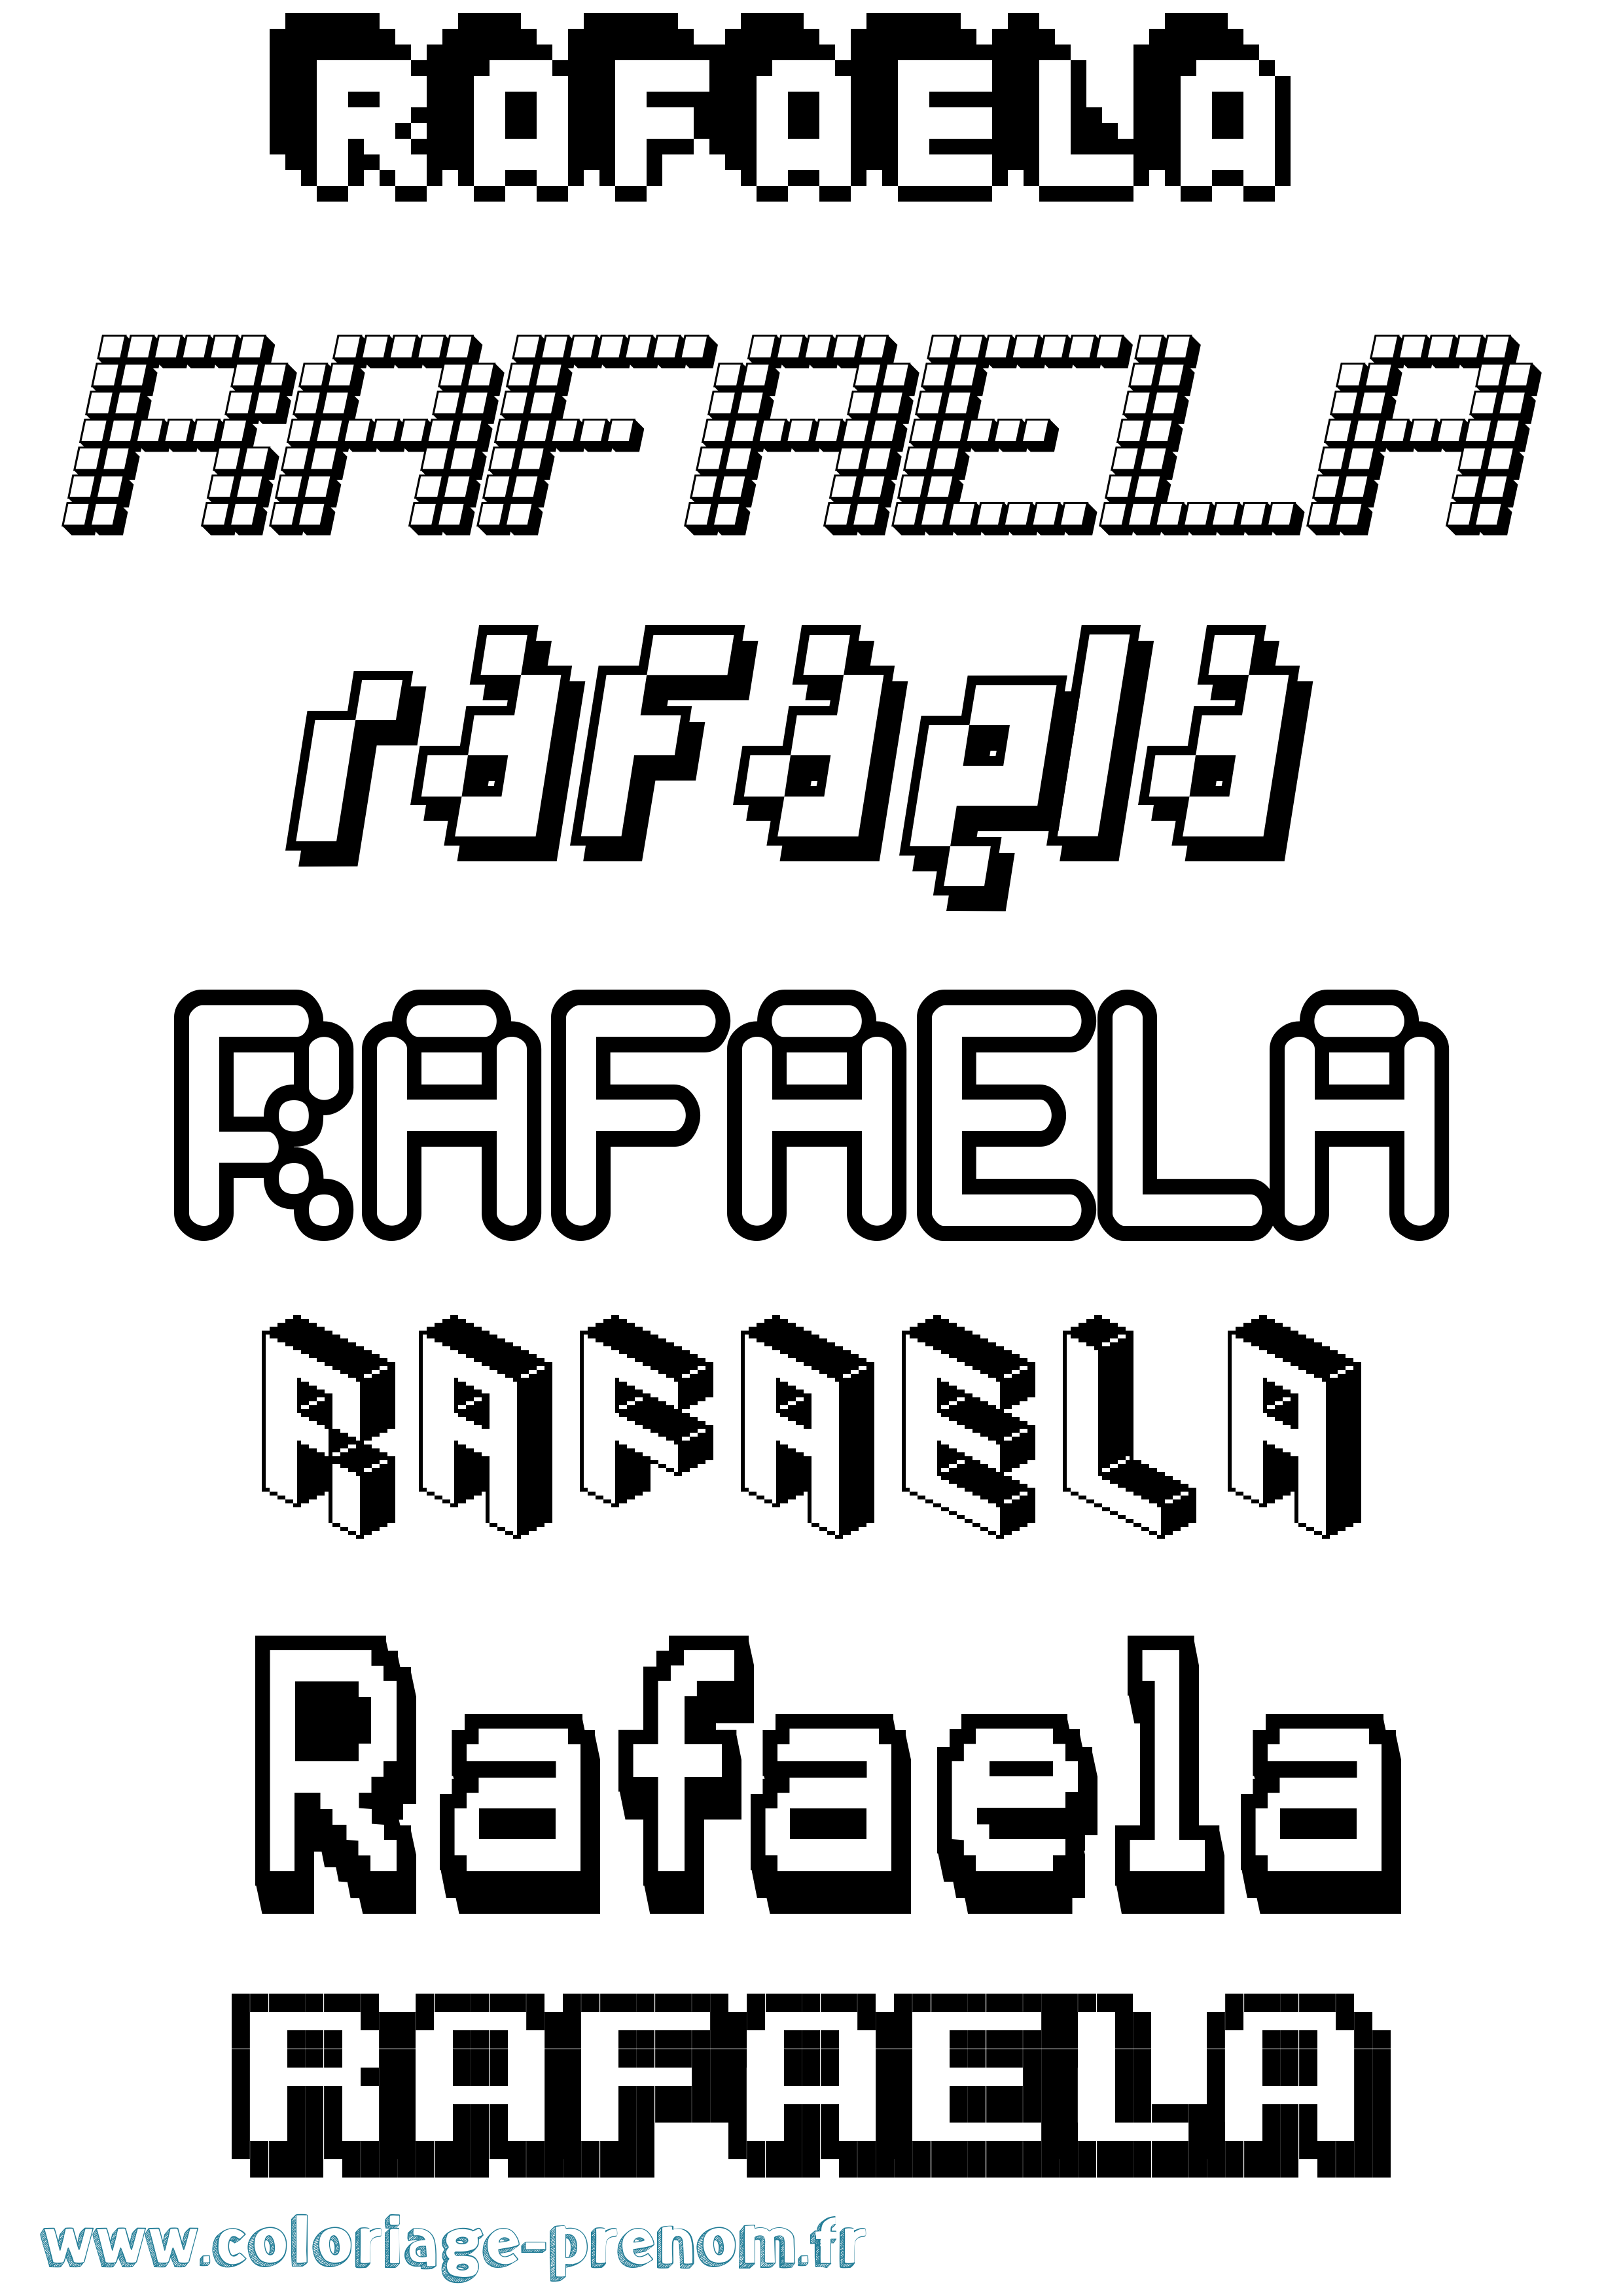 Coloriage prénom Rafaela Pixel